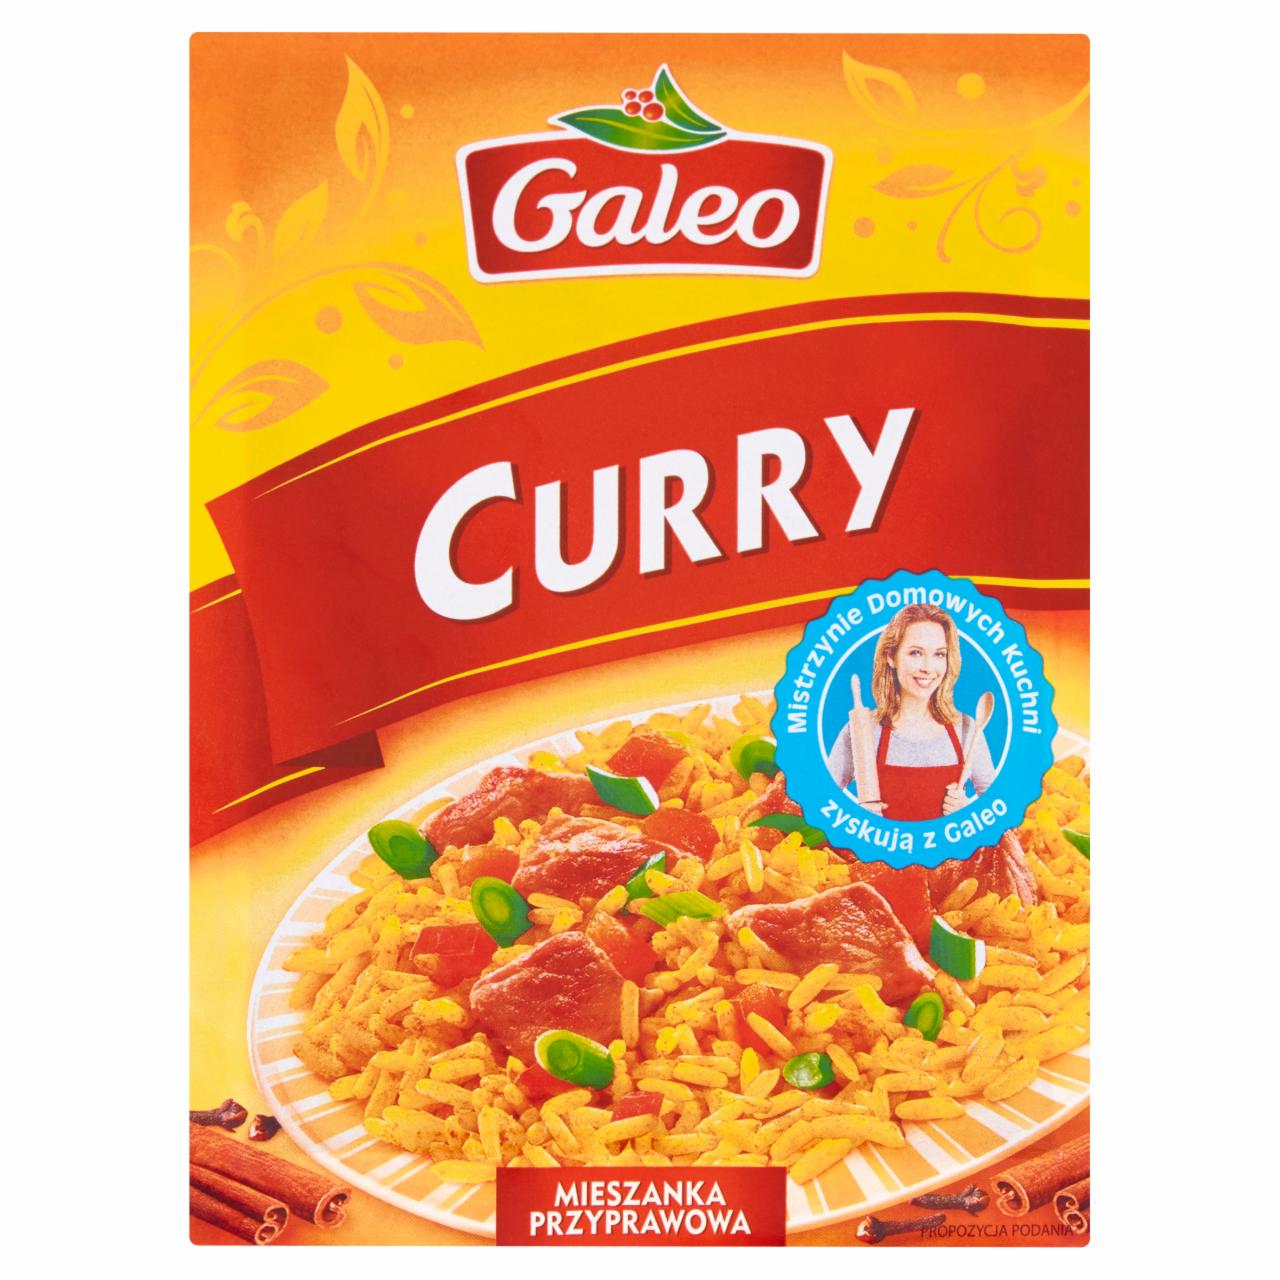 Zdjęcia - Mieszanka przypraw Curry 16 g Galeo